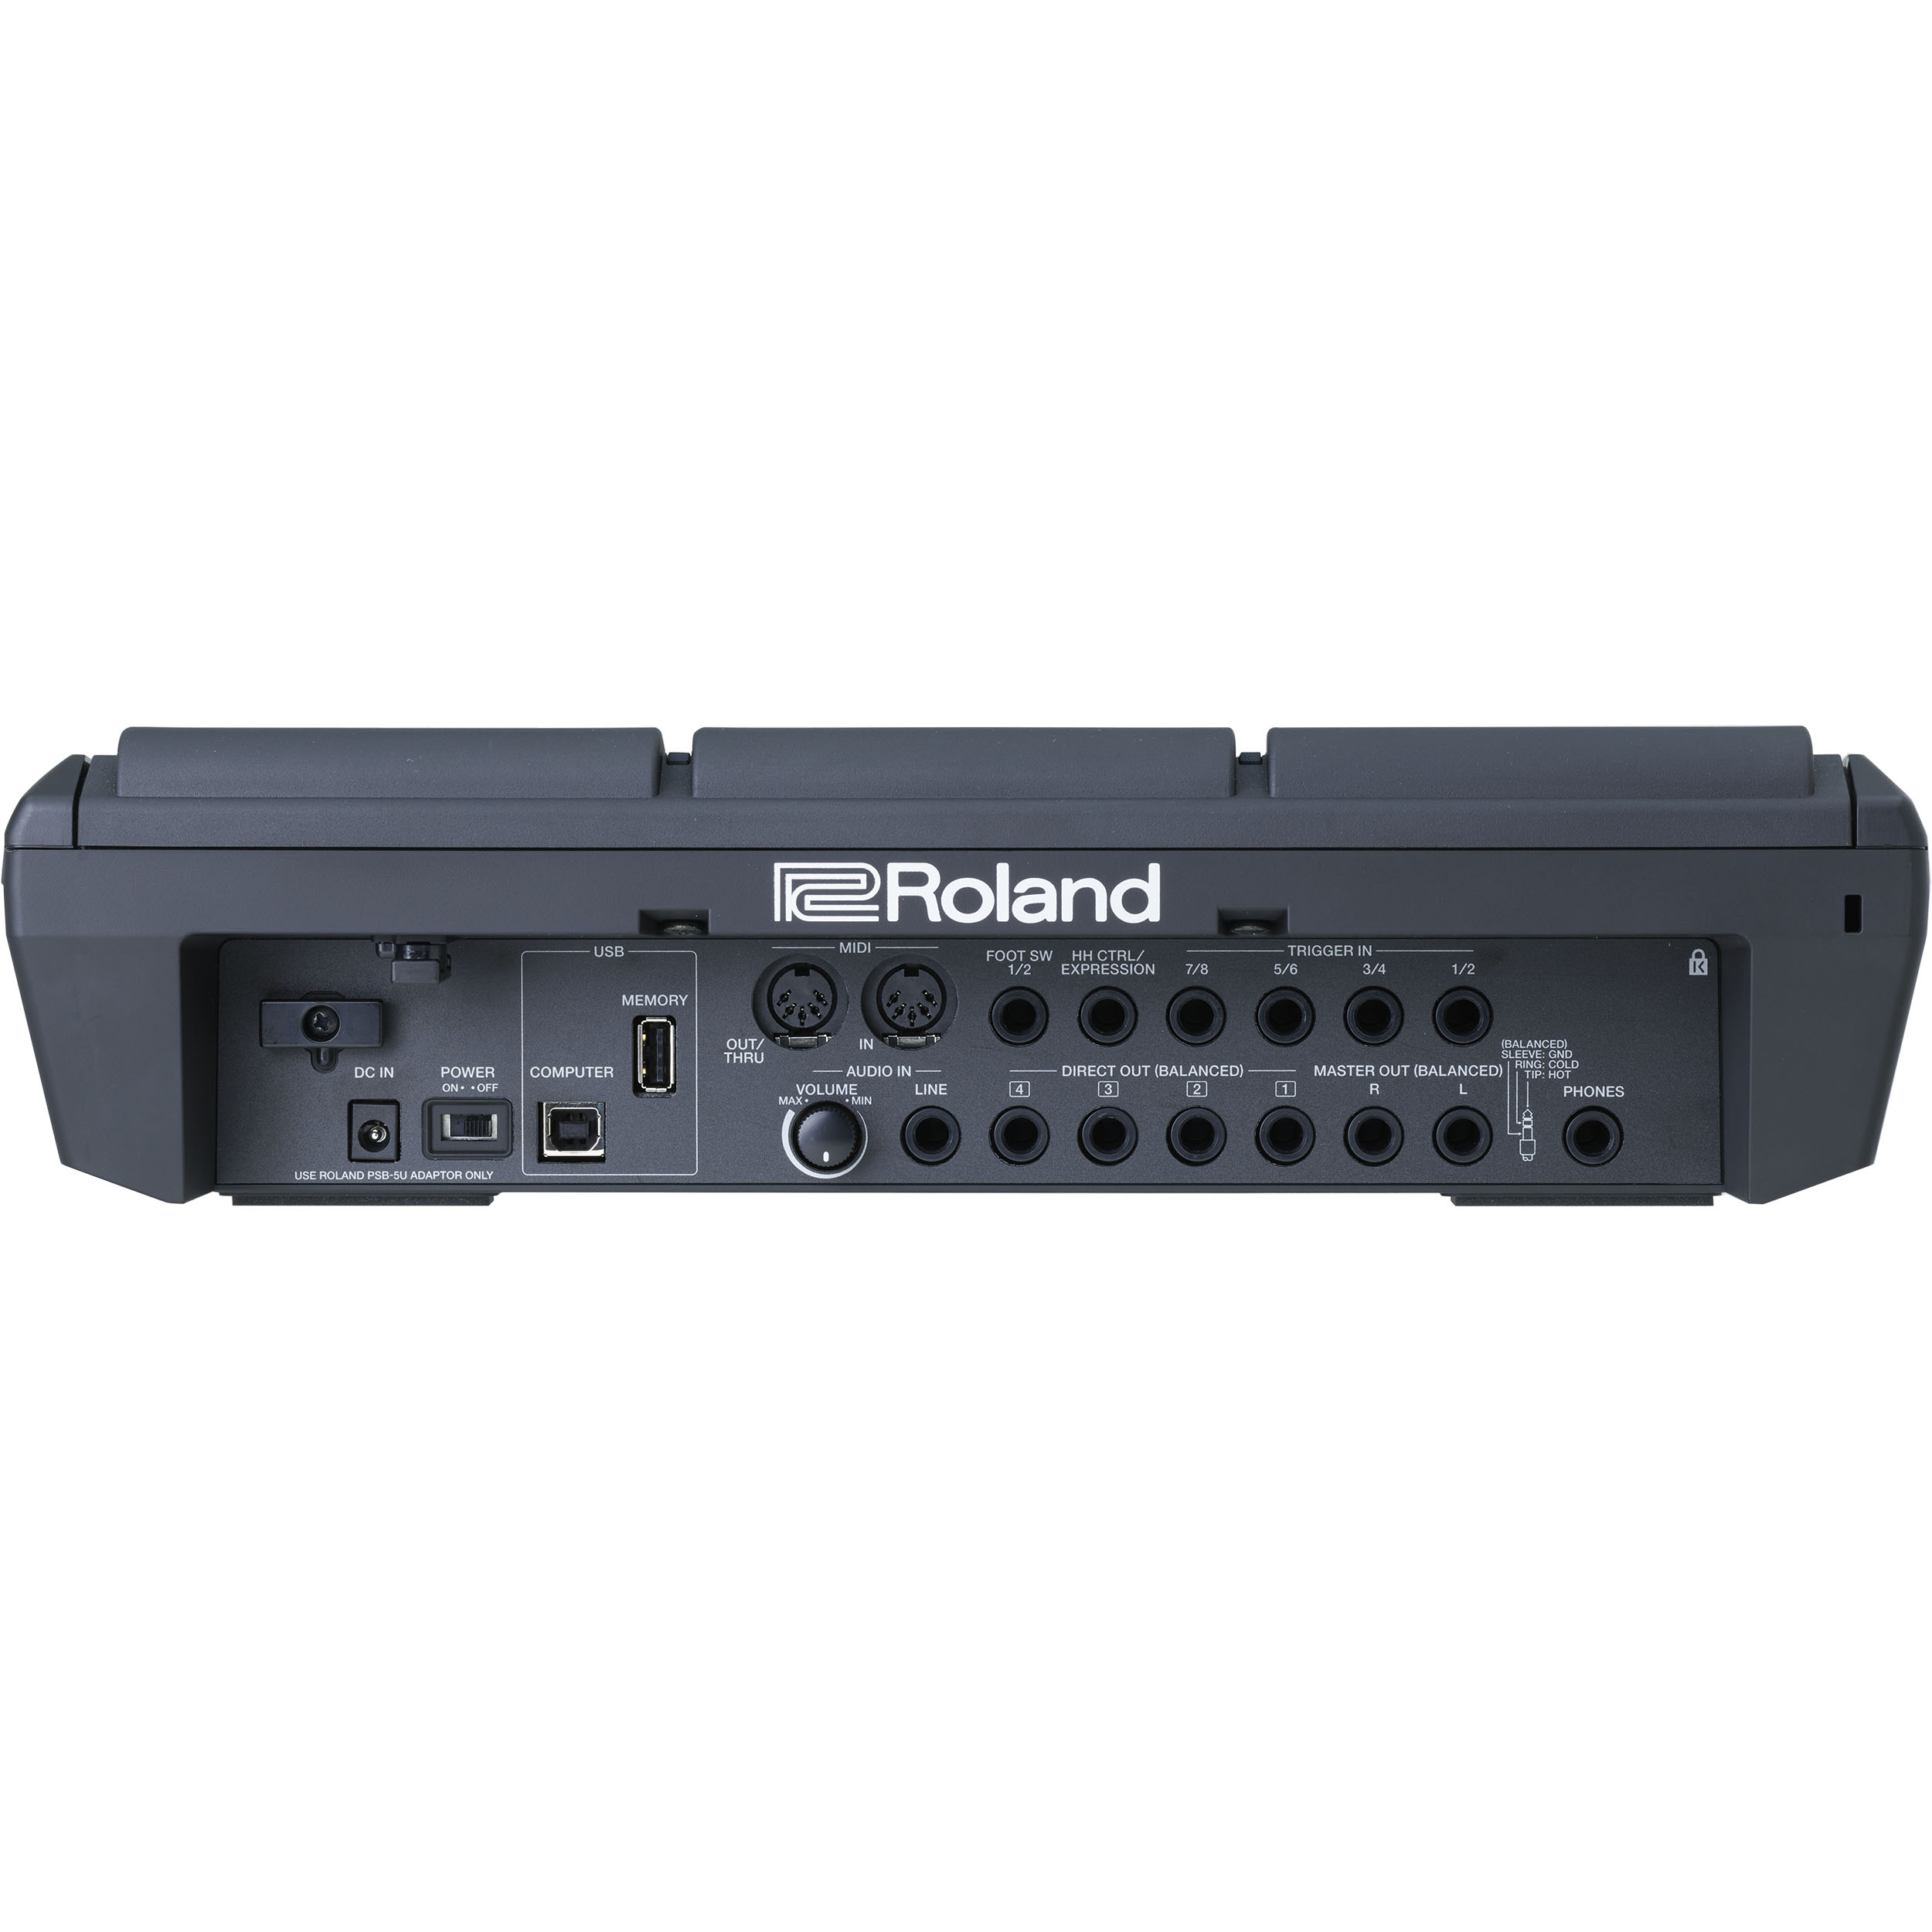 Roland Spd-sx Pro - Multi pad para batería electrónica - Variation 1